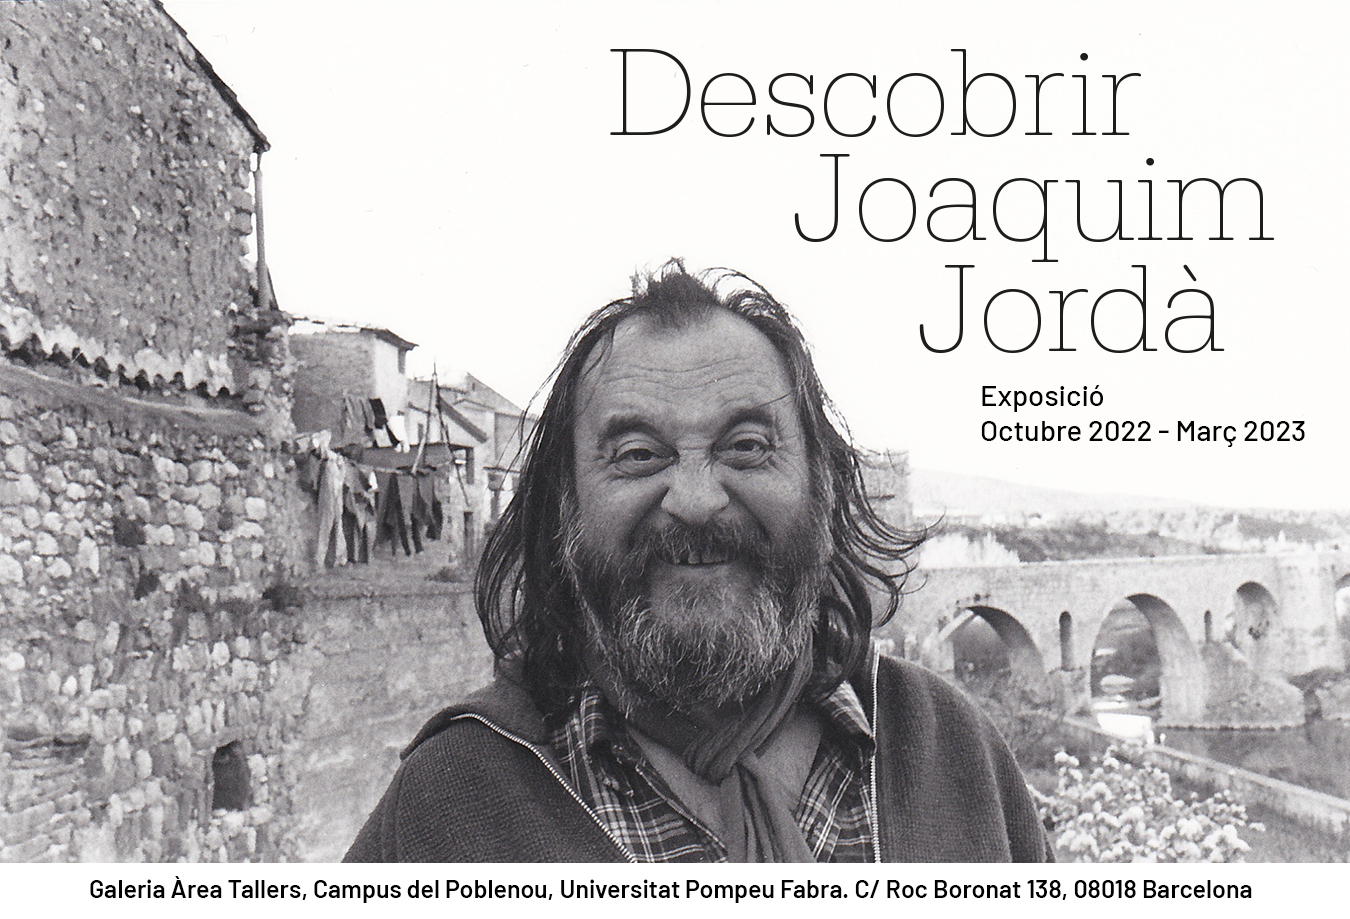 17/10/22: Inauguración de la exposición “Descobrir Joaquim Jordà”.